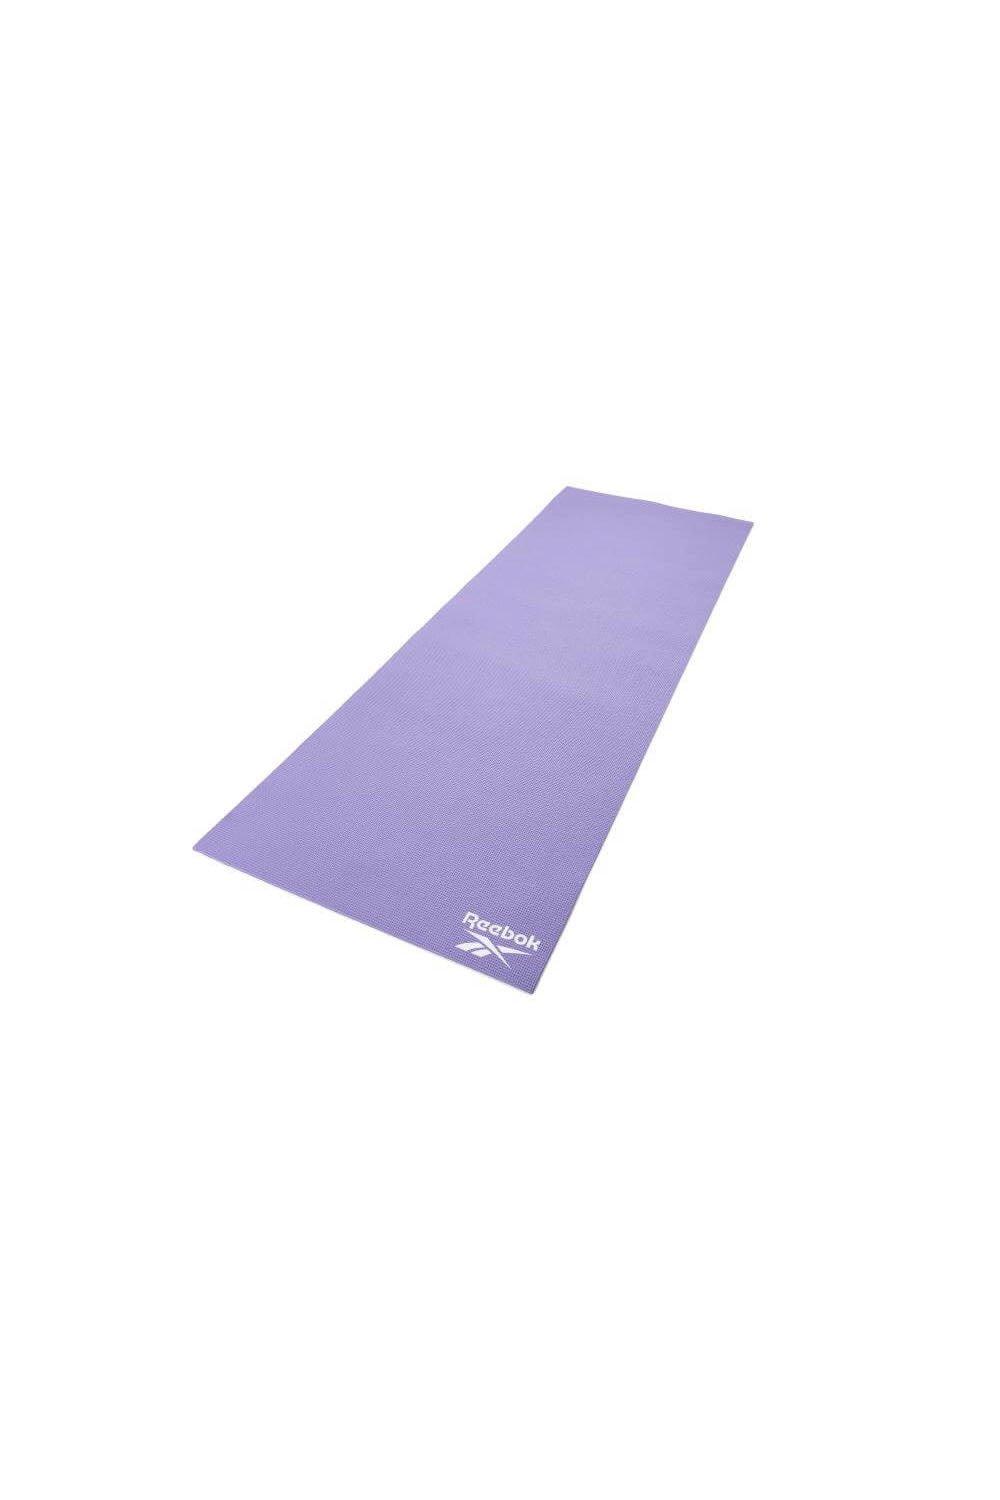 Коврик для йоги 4 мм Reebok, фиолетовый